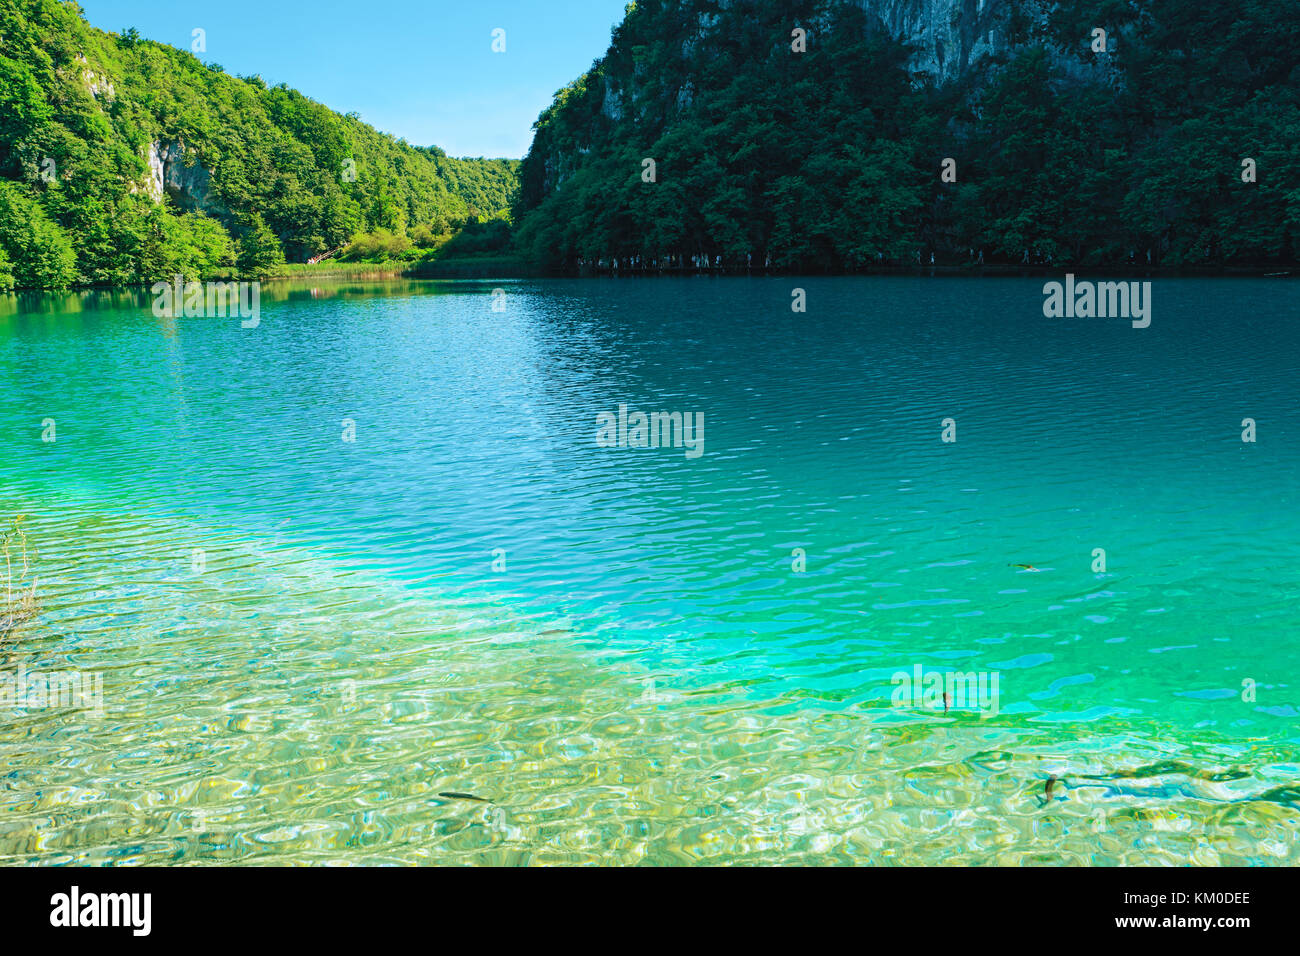 Parque nacional de los lagos de Plitvice, Croacia, Europa. parque natural con cascadas y aguas turquesas. Sitio de Patrimonio Mundial de la UNESCO. azul agua clara de plitv Foto de stock